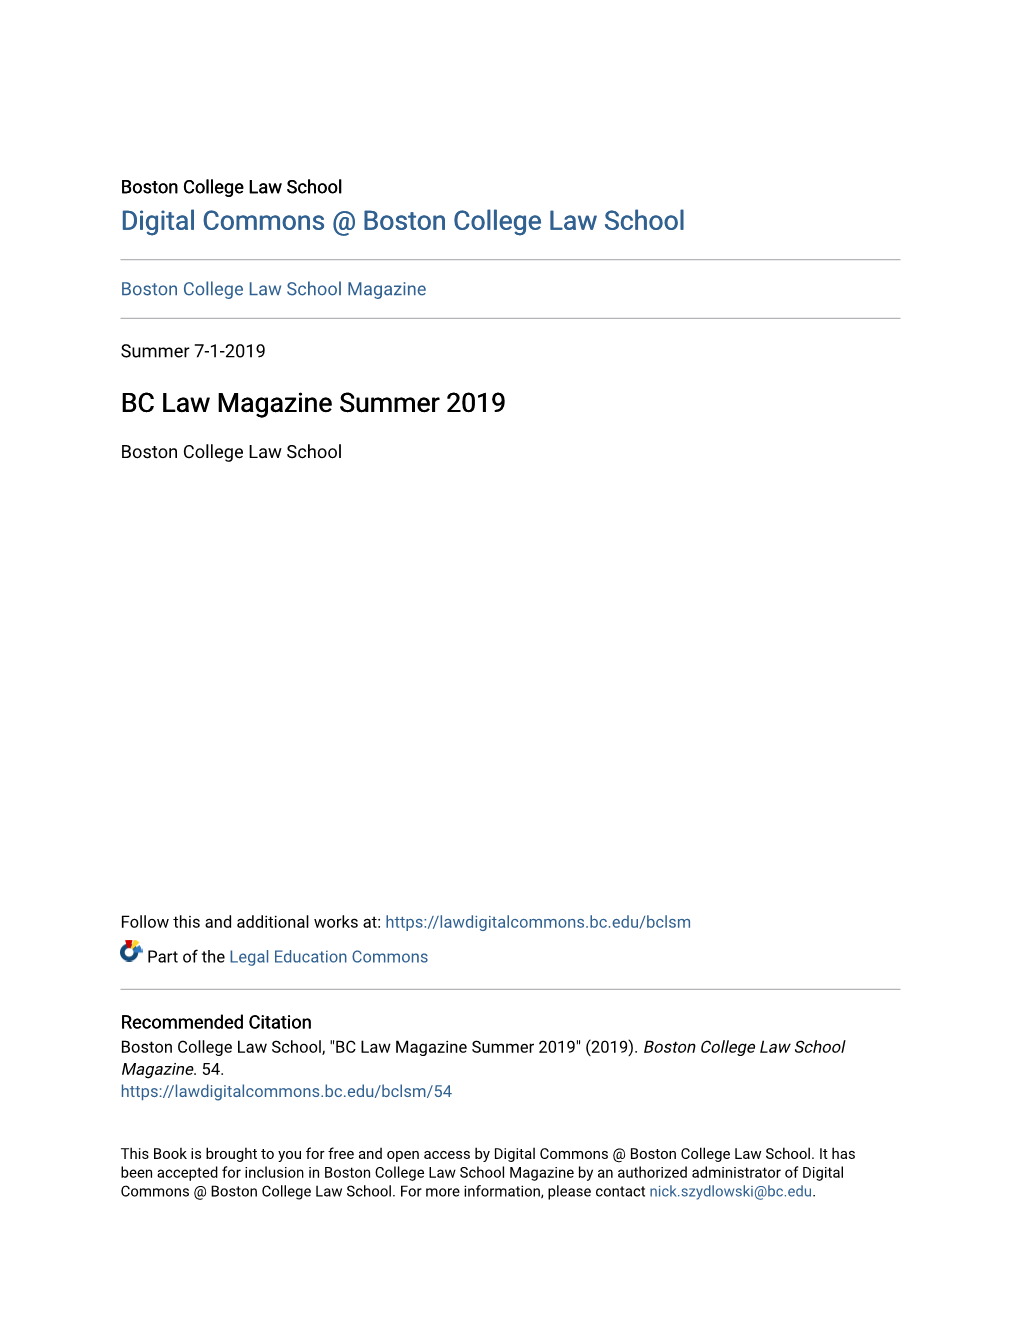 BC Law Magazine Summer 2019